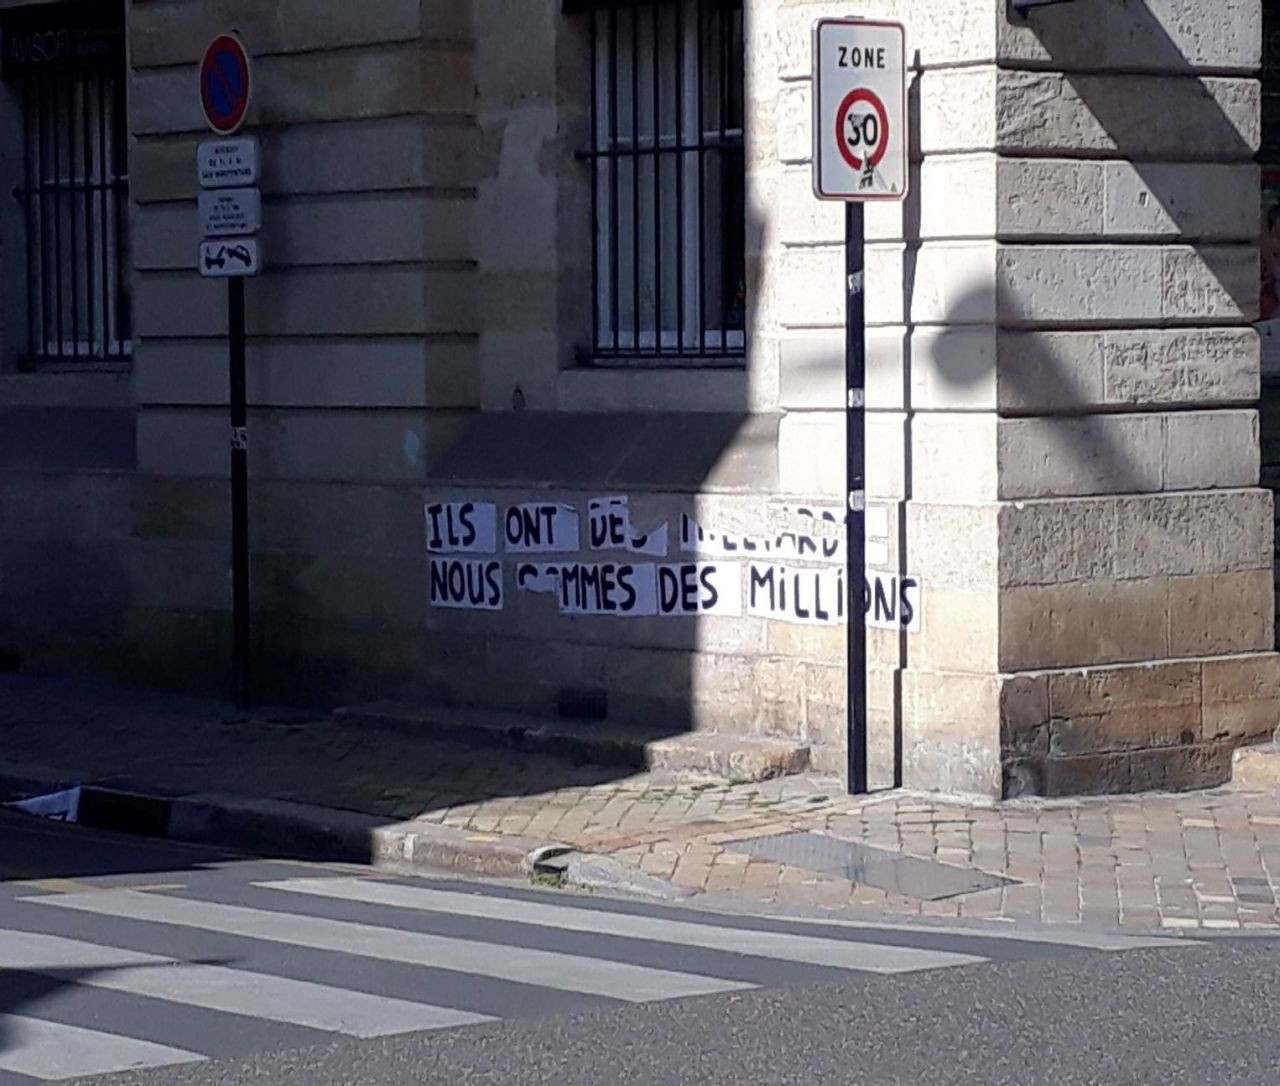 Duvar Yazıları, pankartlar ve toplum: Fransa’nın politik ve toplumsal ahvâline bir bakış - Sayfa 4